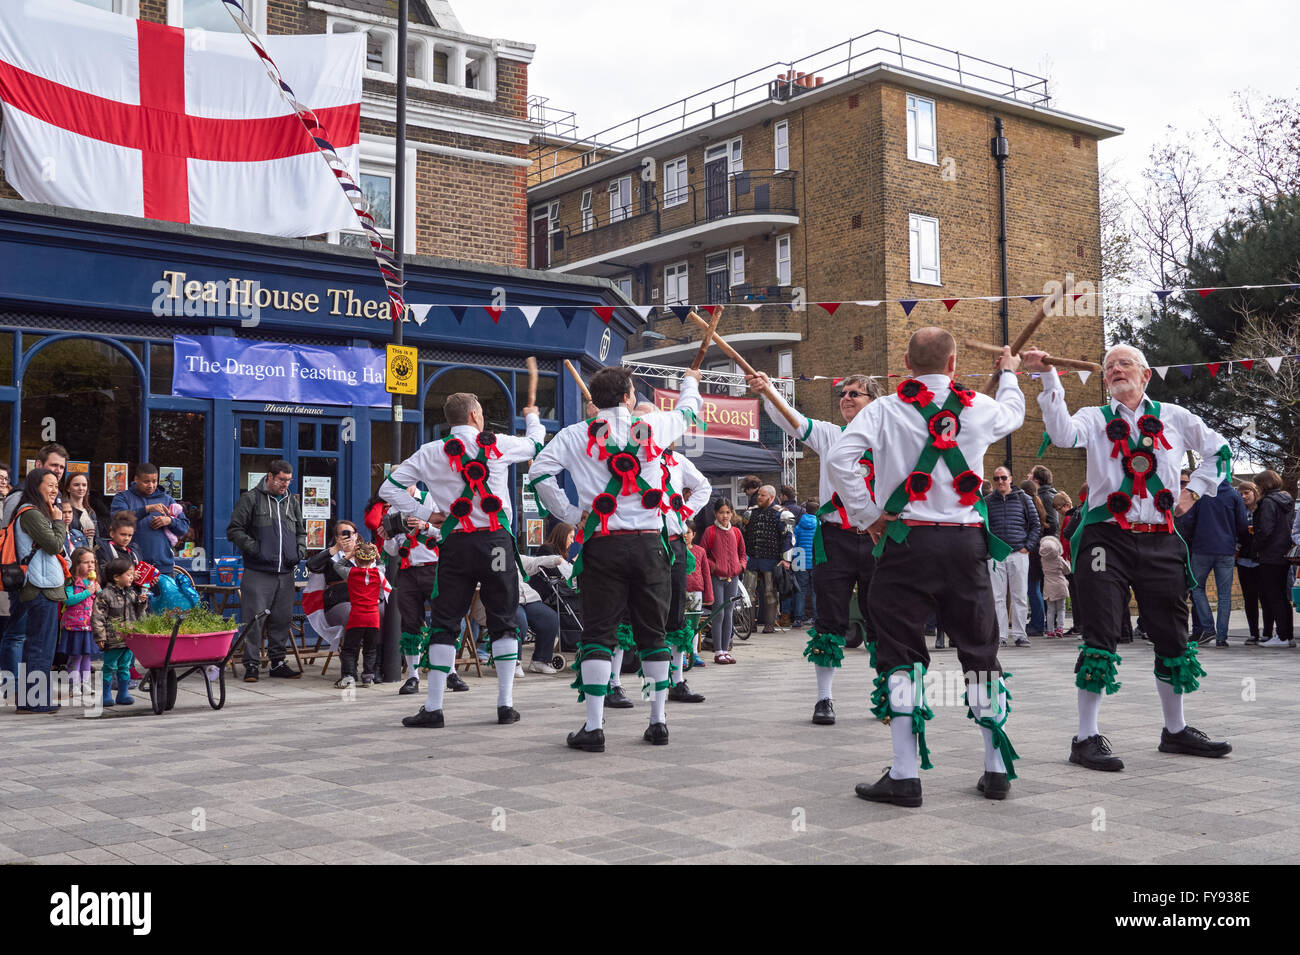 Morris Dancers au St George's Festival à Londres Angleterre Royaume-Uni Banque D'Images